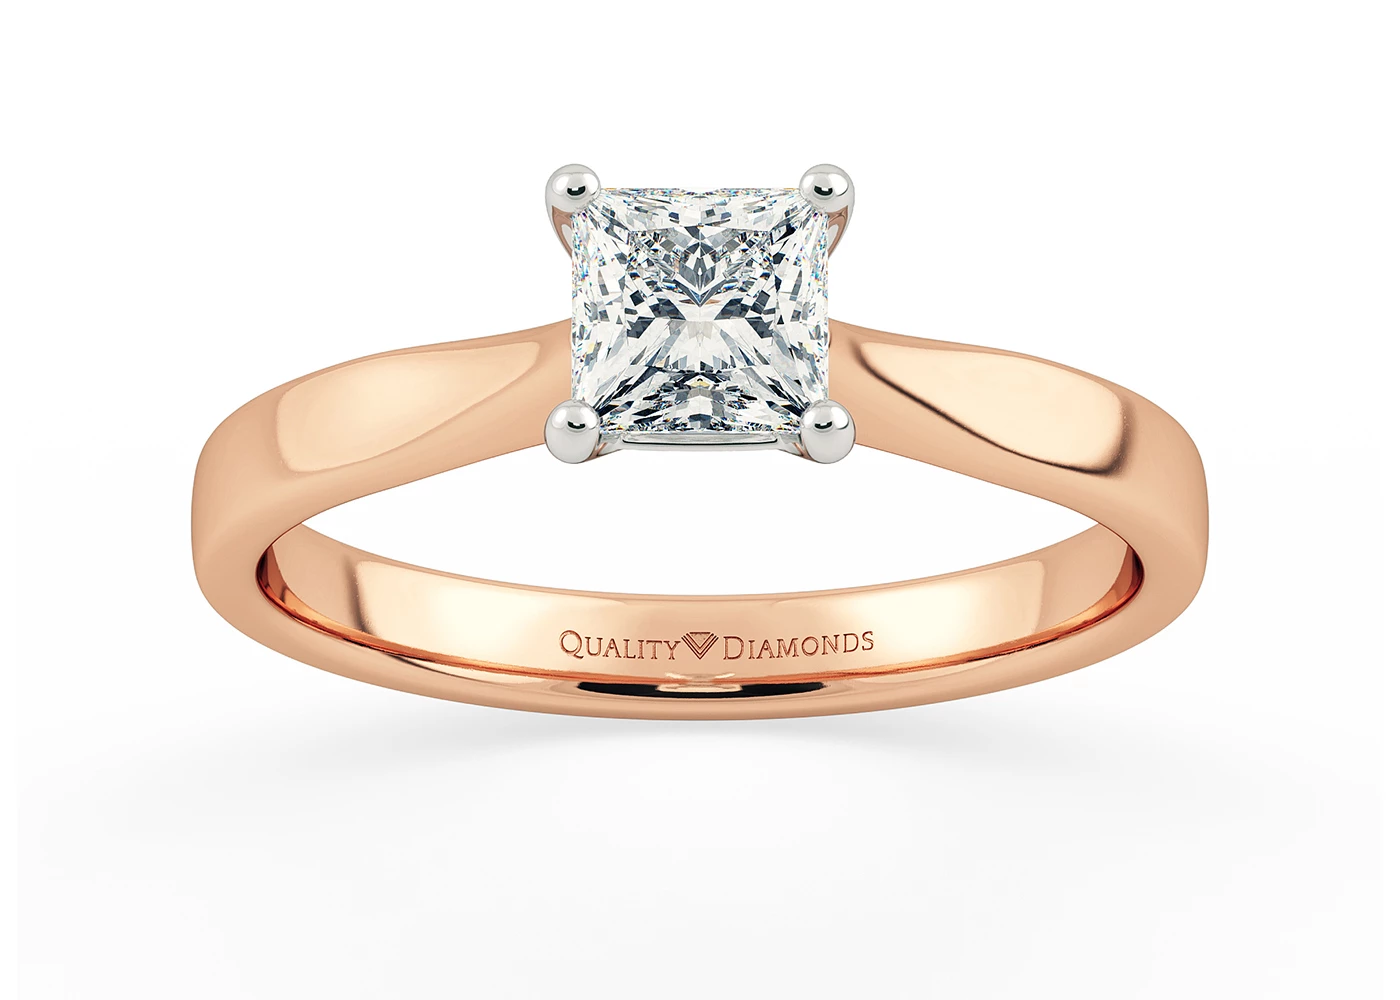 Princess Beau Diamond Ring in 18K Rose Gold